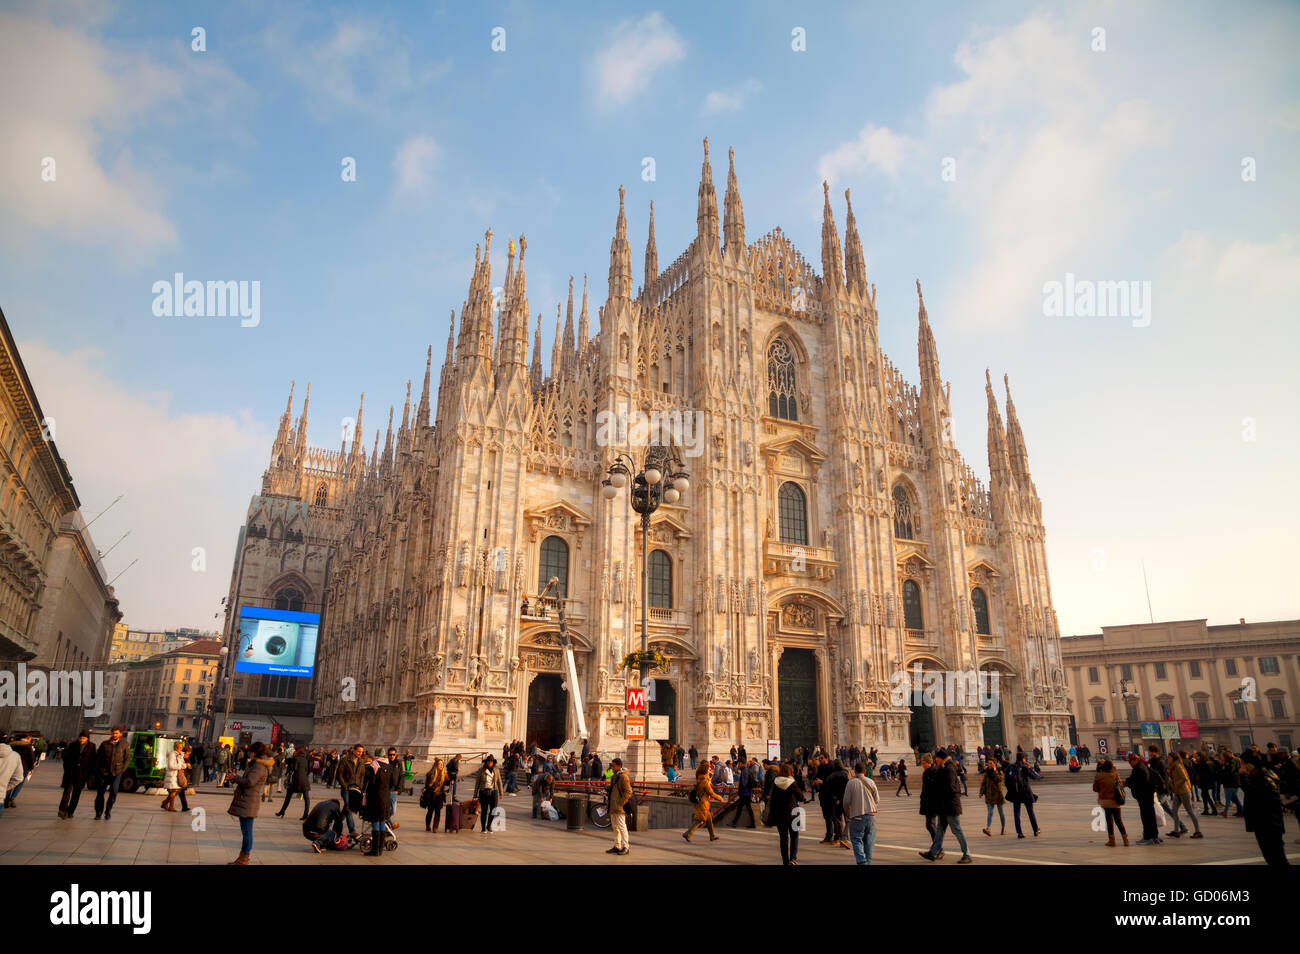 Mailand, Italien - 25 NOVEMBER: Dom mit Menschen am 25. November 2015 in Mailand, Italien. Stockfoto